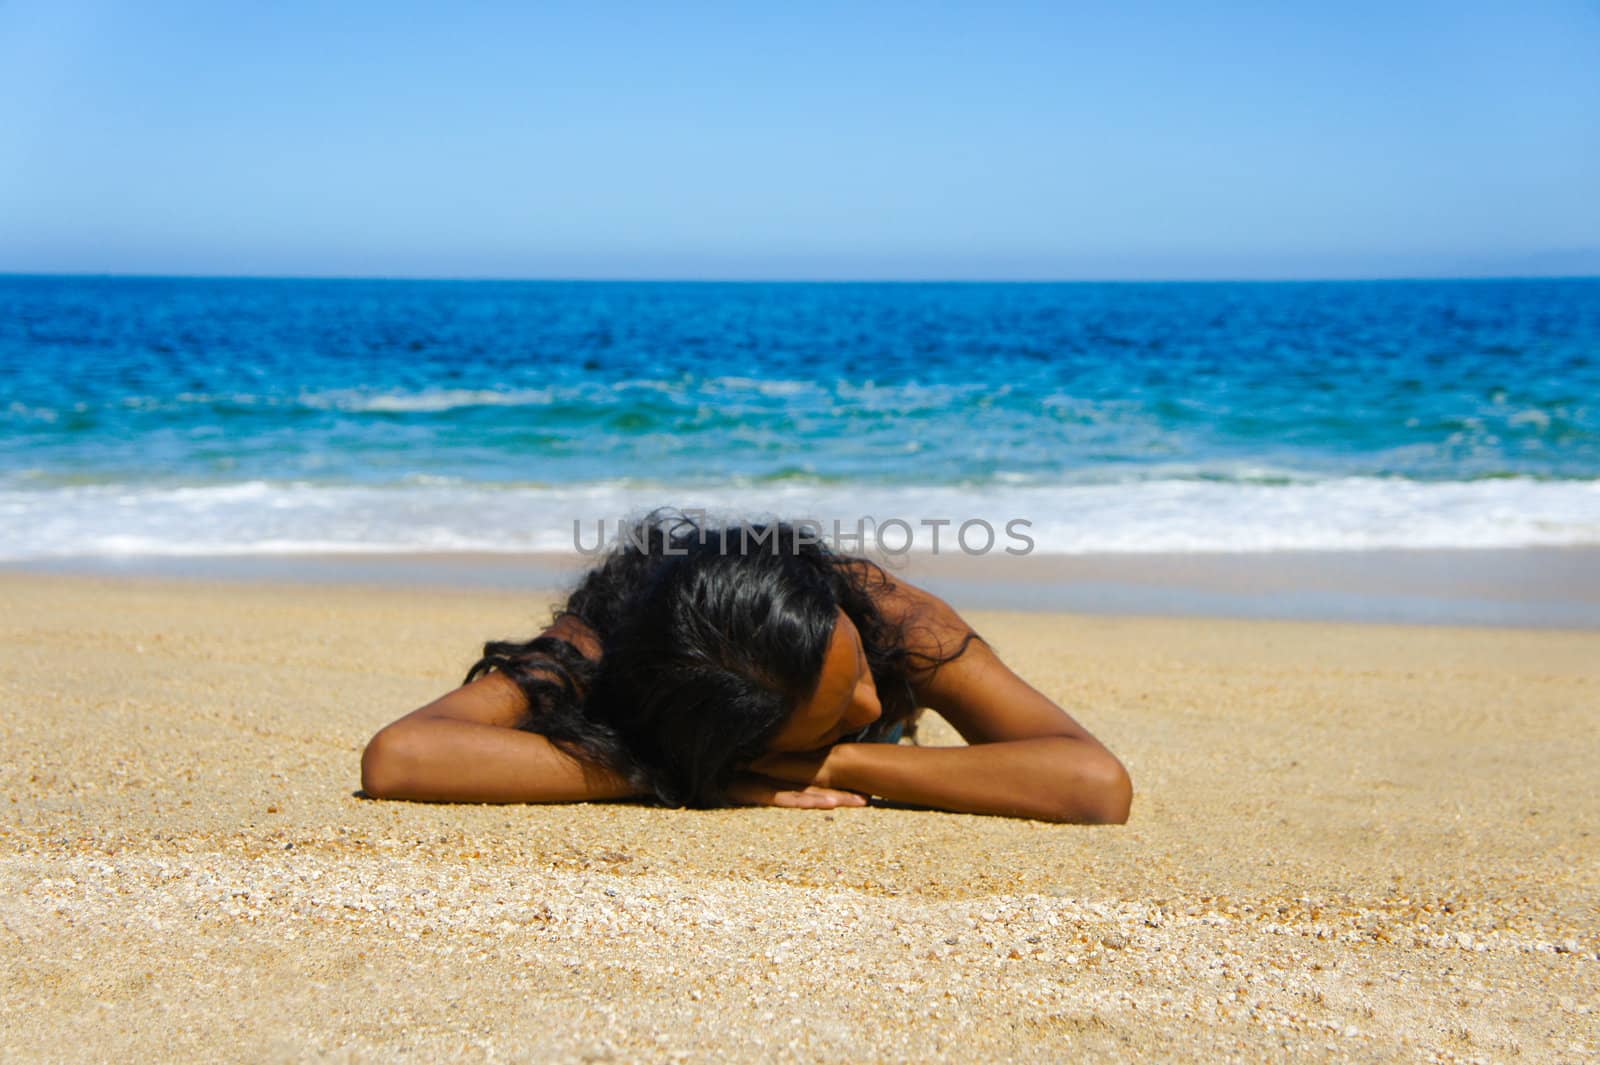 Lying on the beach by kbuntu